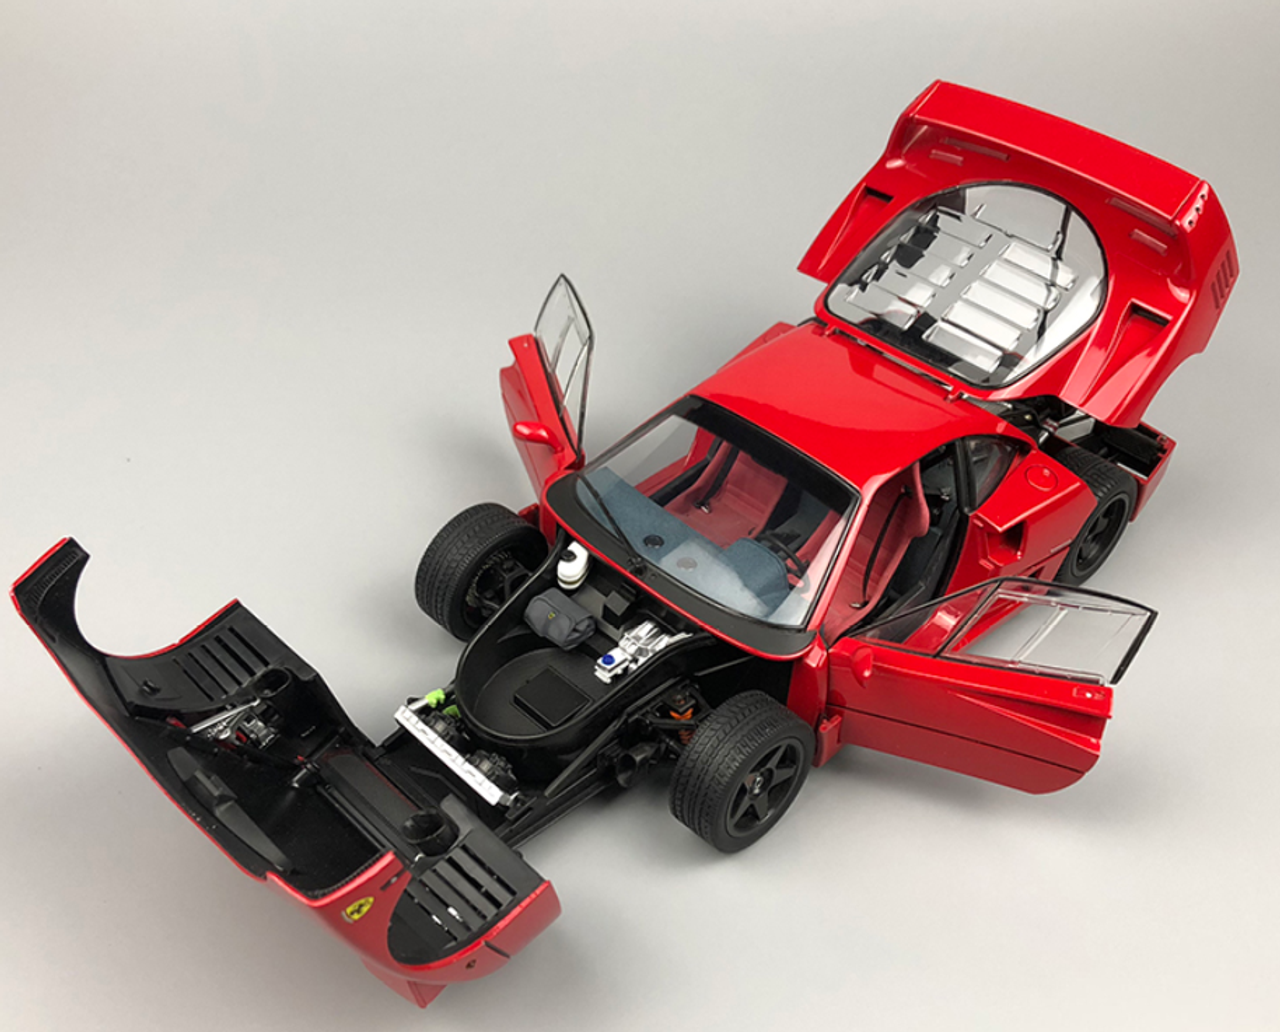 1/18 Kyosho Ferrari F40 Lightweight Red Rosso Corso Diecast Car Model